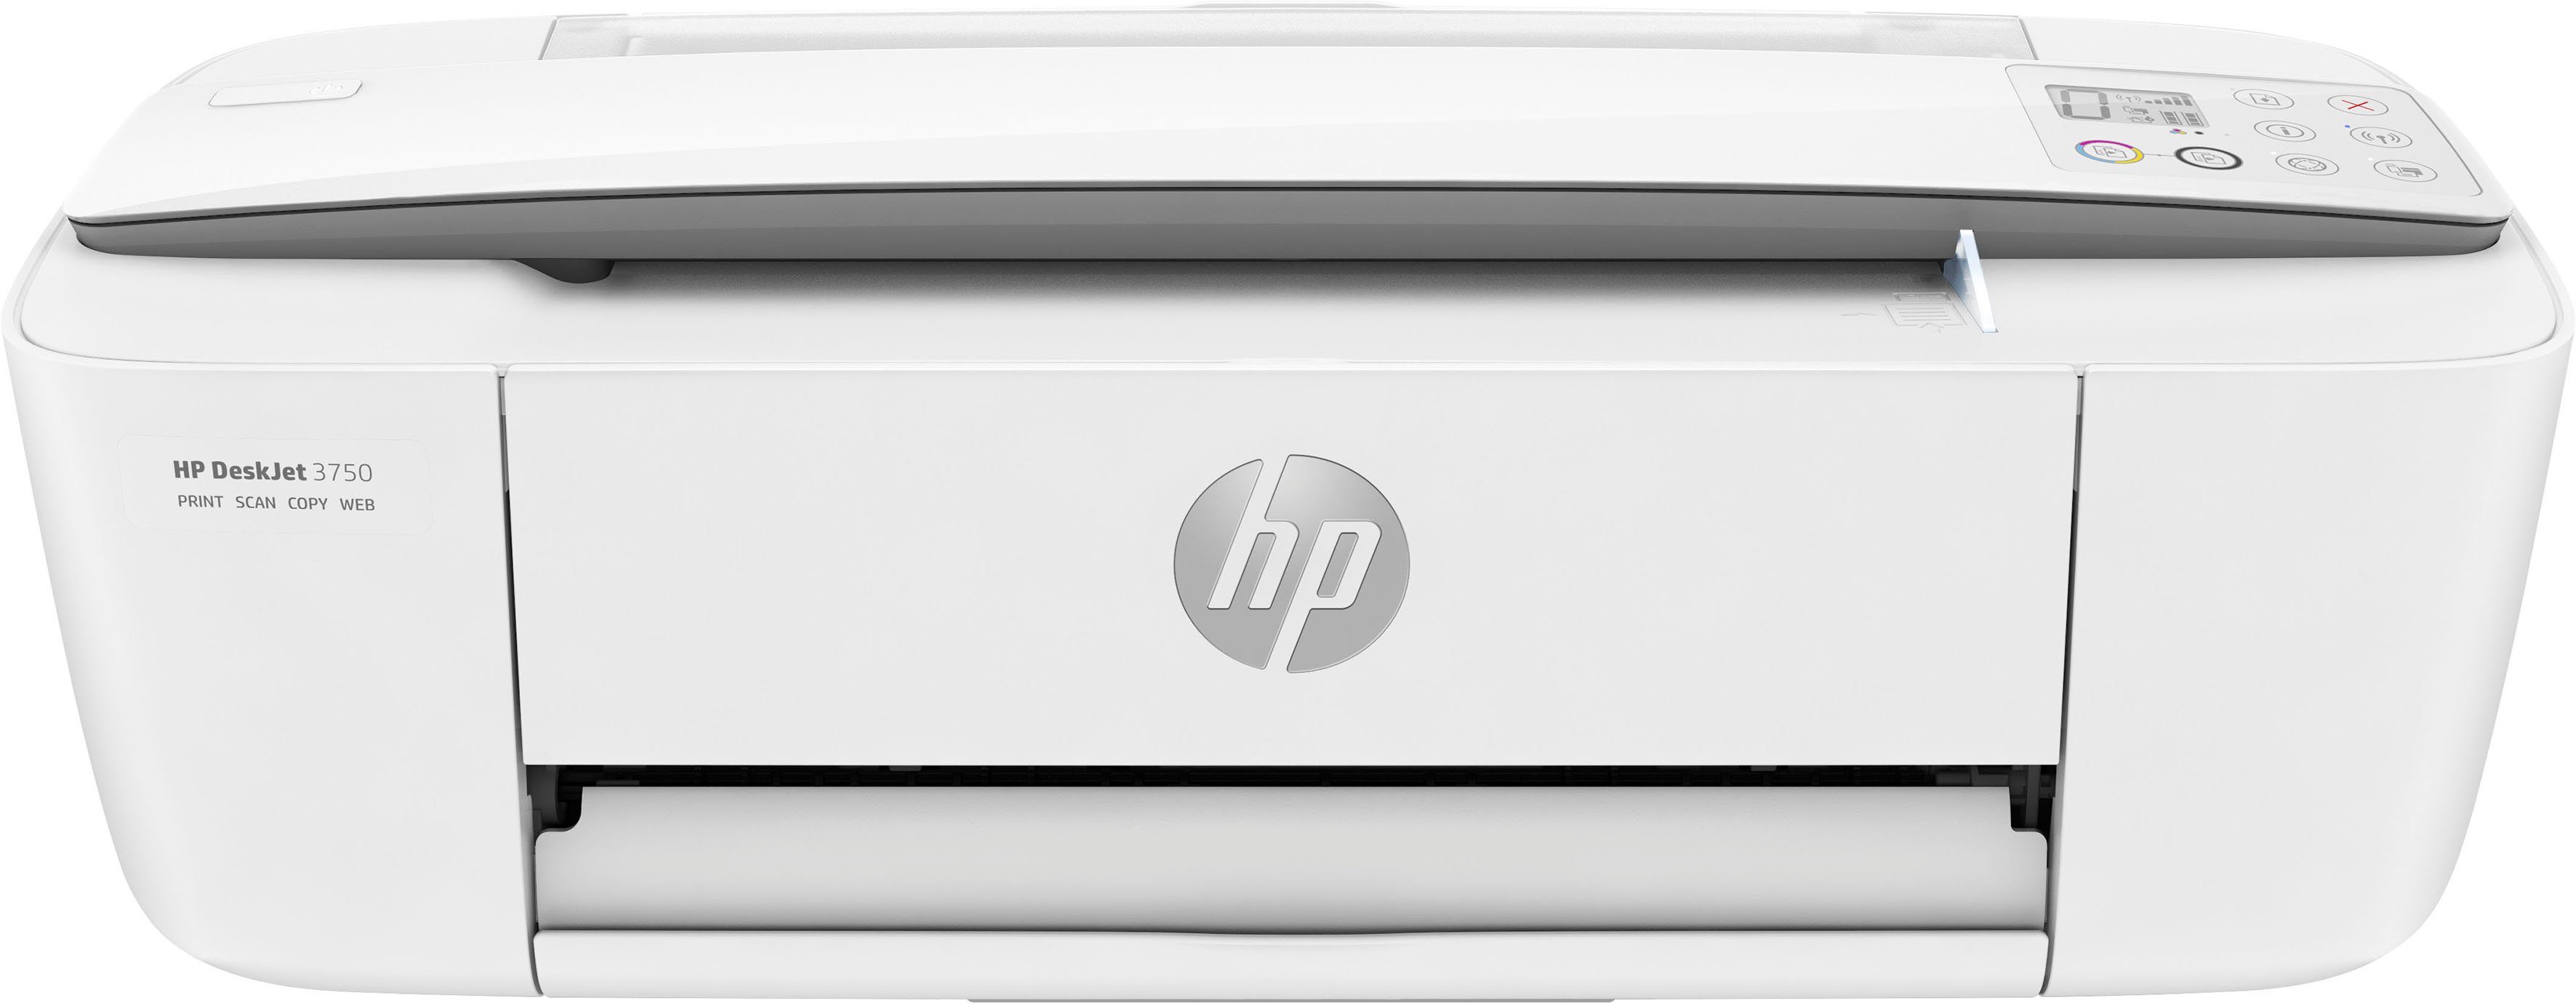 Verkaufskunde HP Drucker DeskJet 3750 Instant Multifunktionsdrucker, kompatibel) Ink HP+ (Wi-Fi), (WLAN